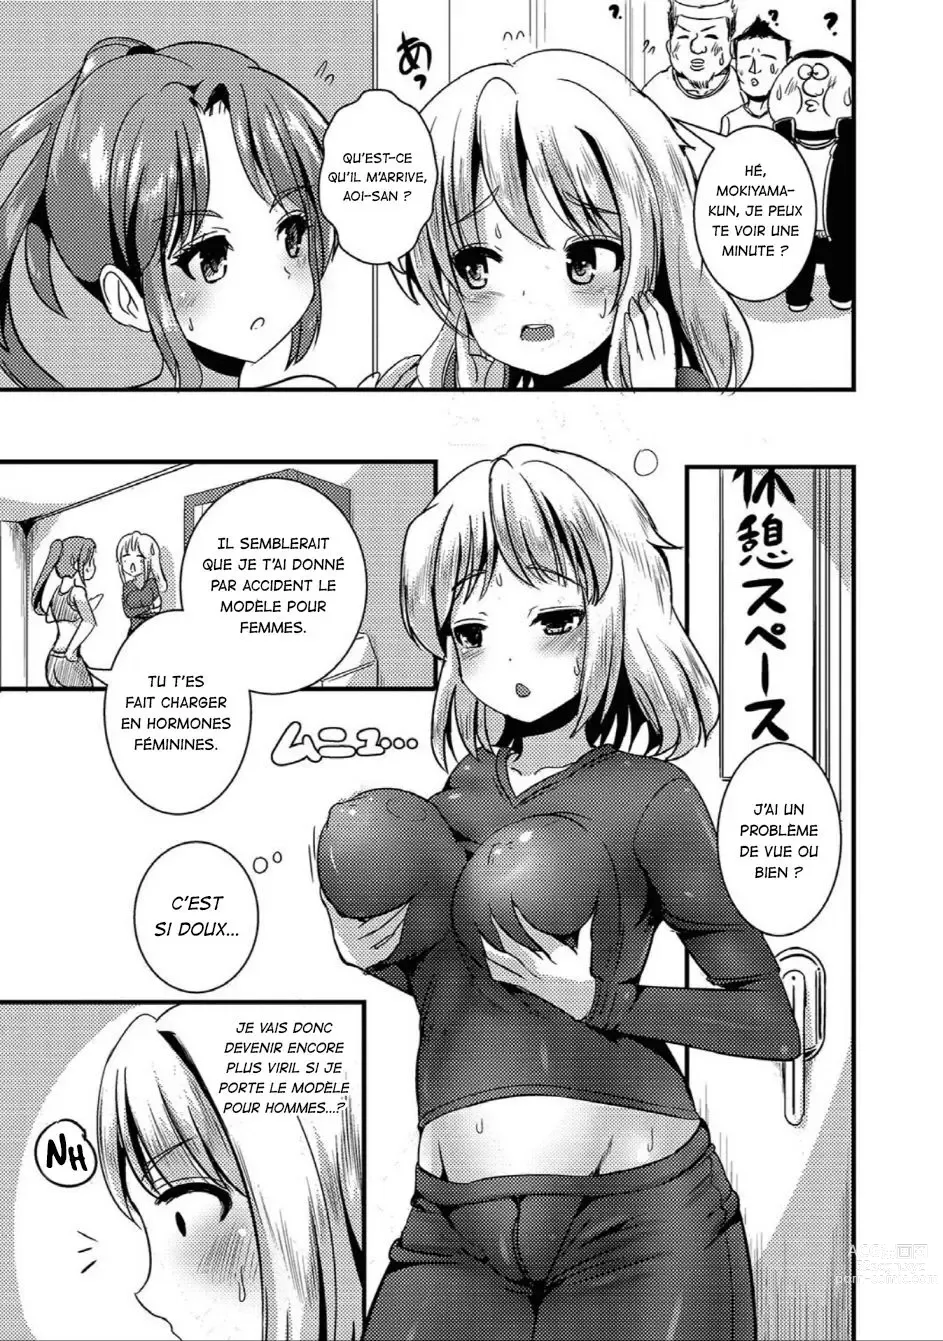 Page 5 of manga TS Tights